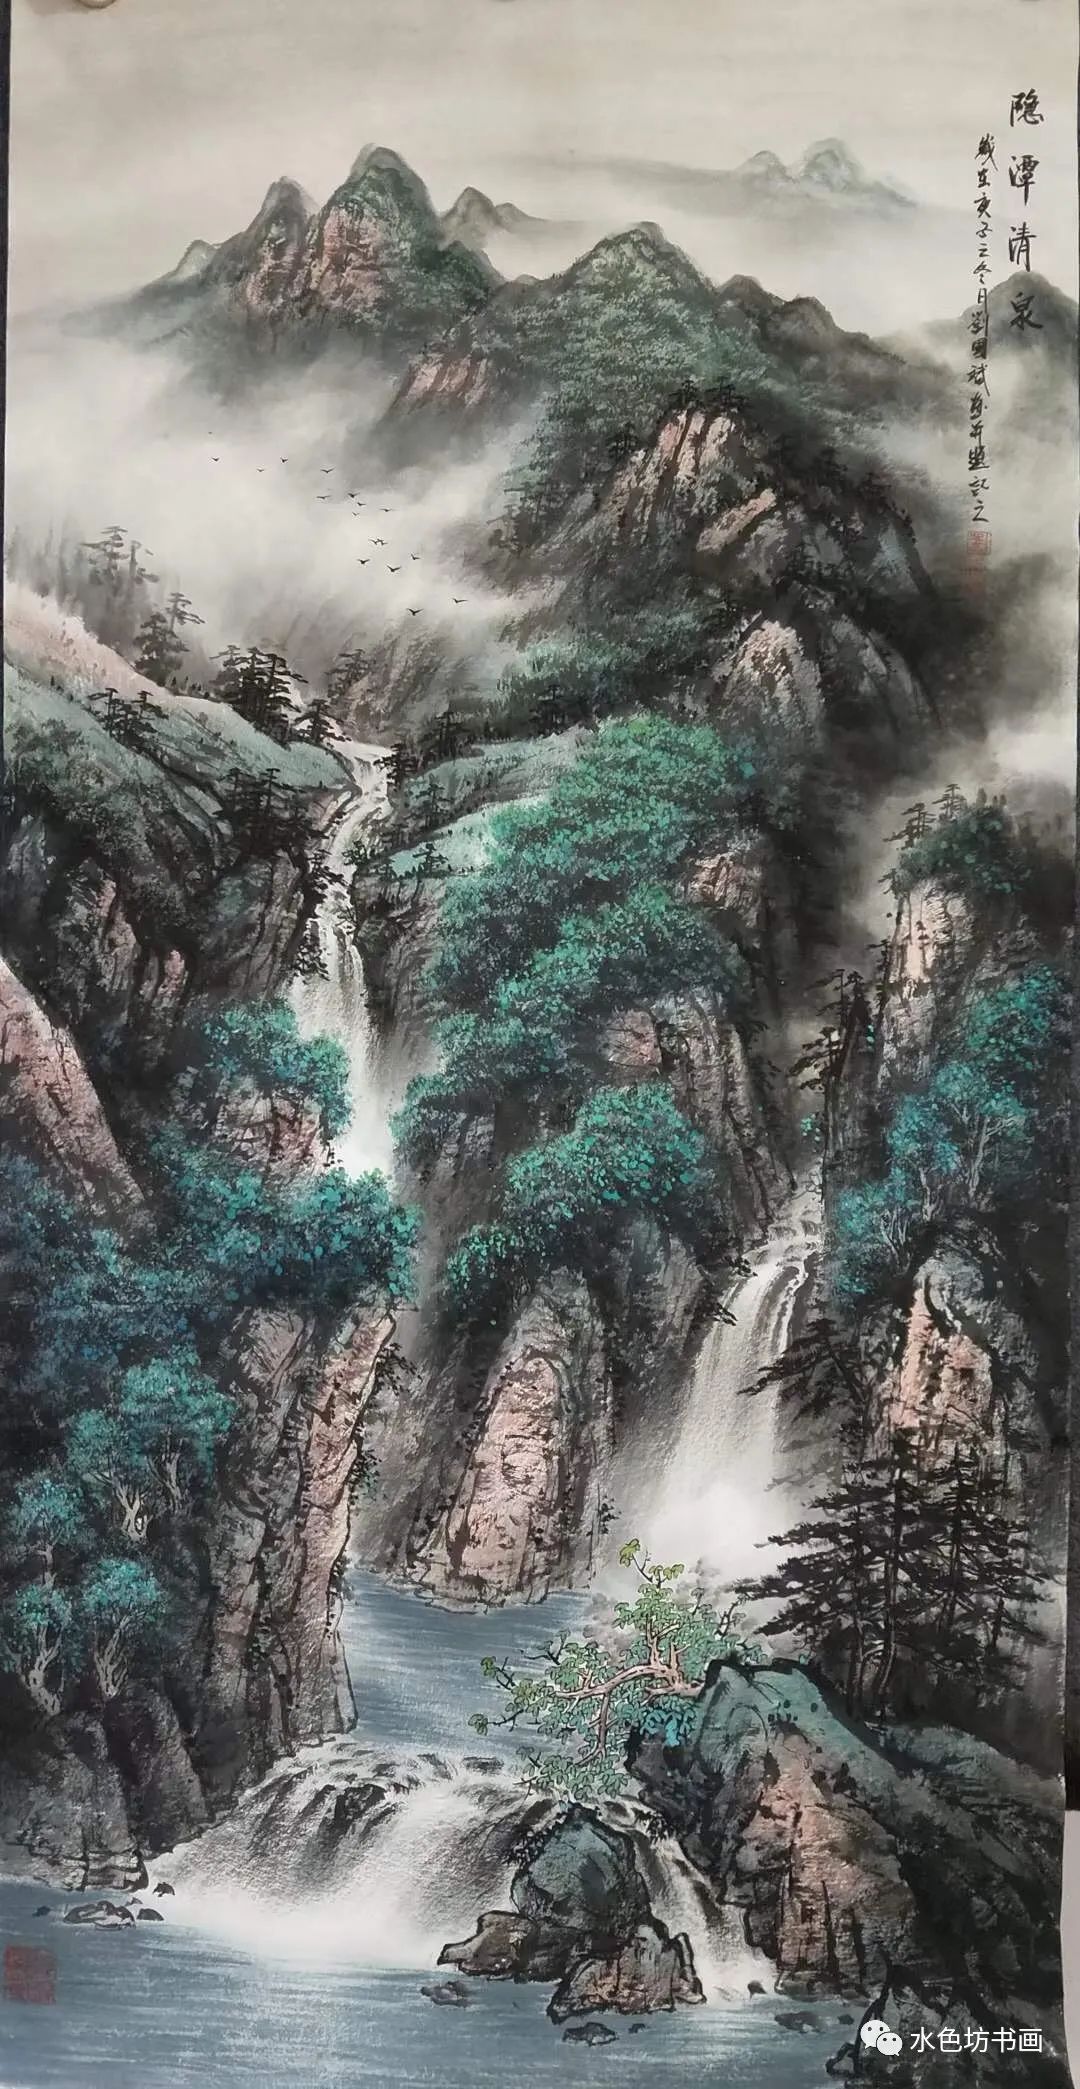 刘国斌老师在山水画构图,布景上结构十分严密紧凑,绝无松垮之感